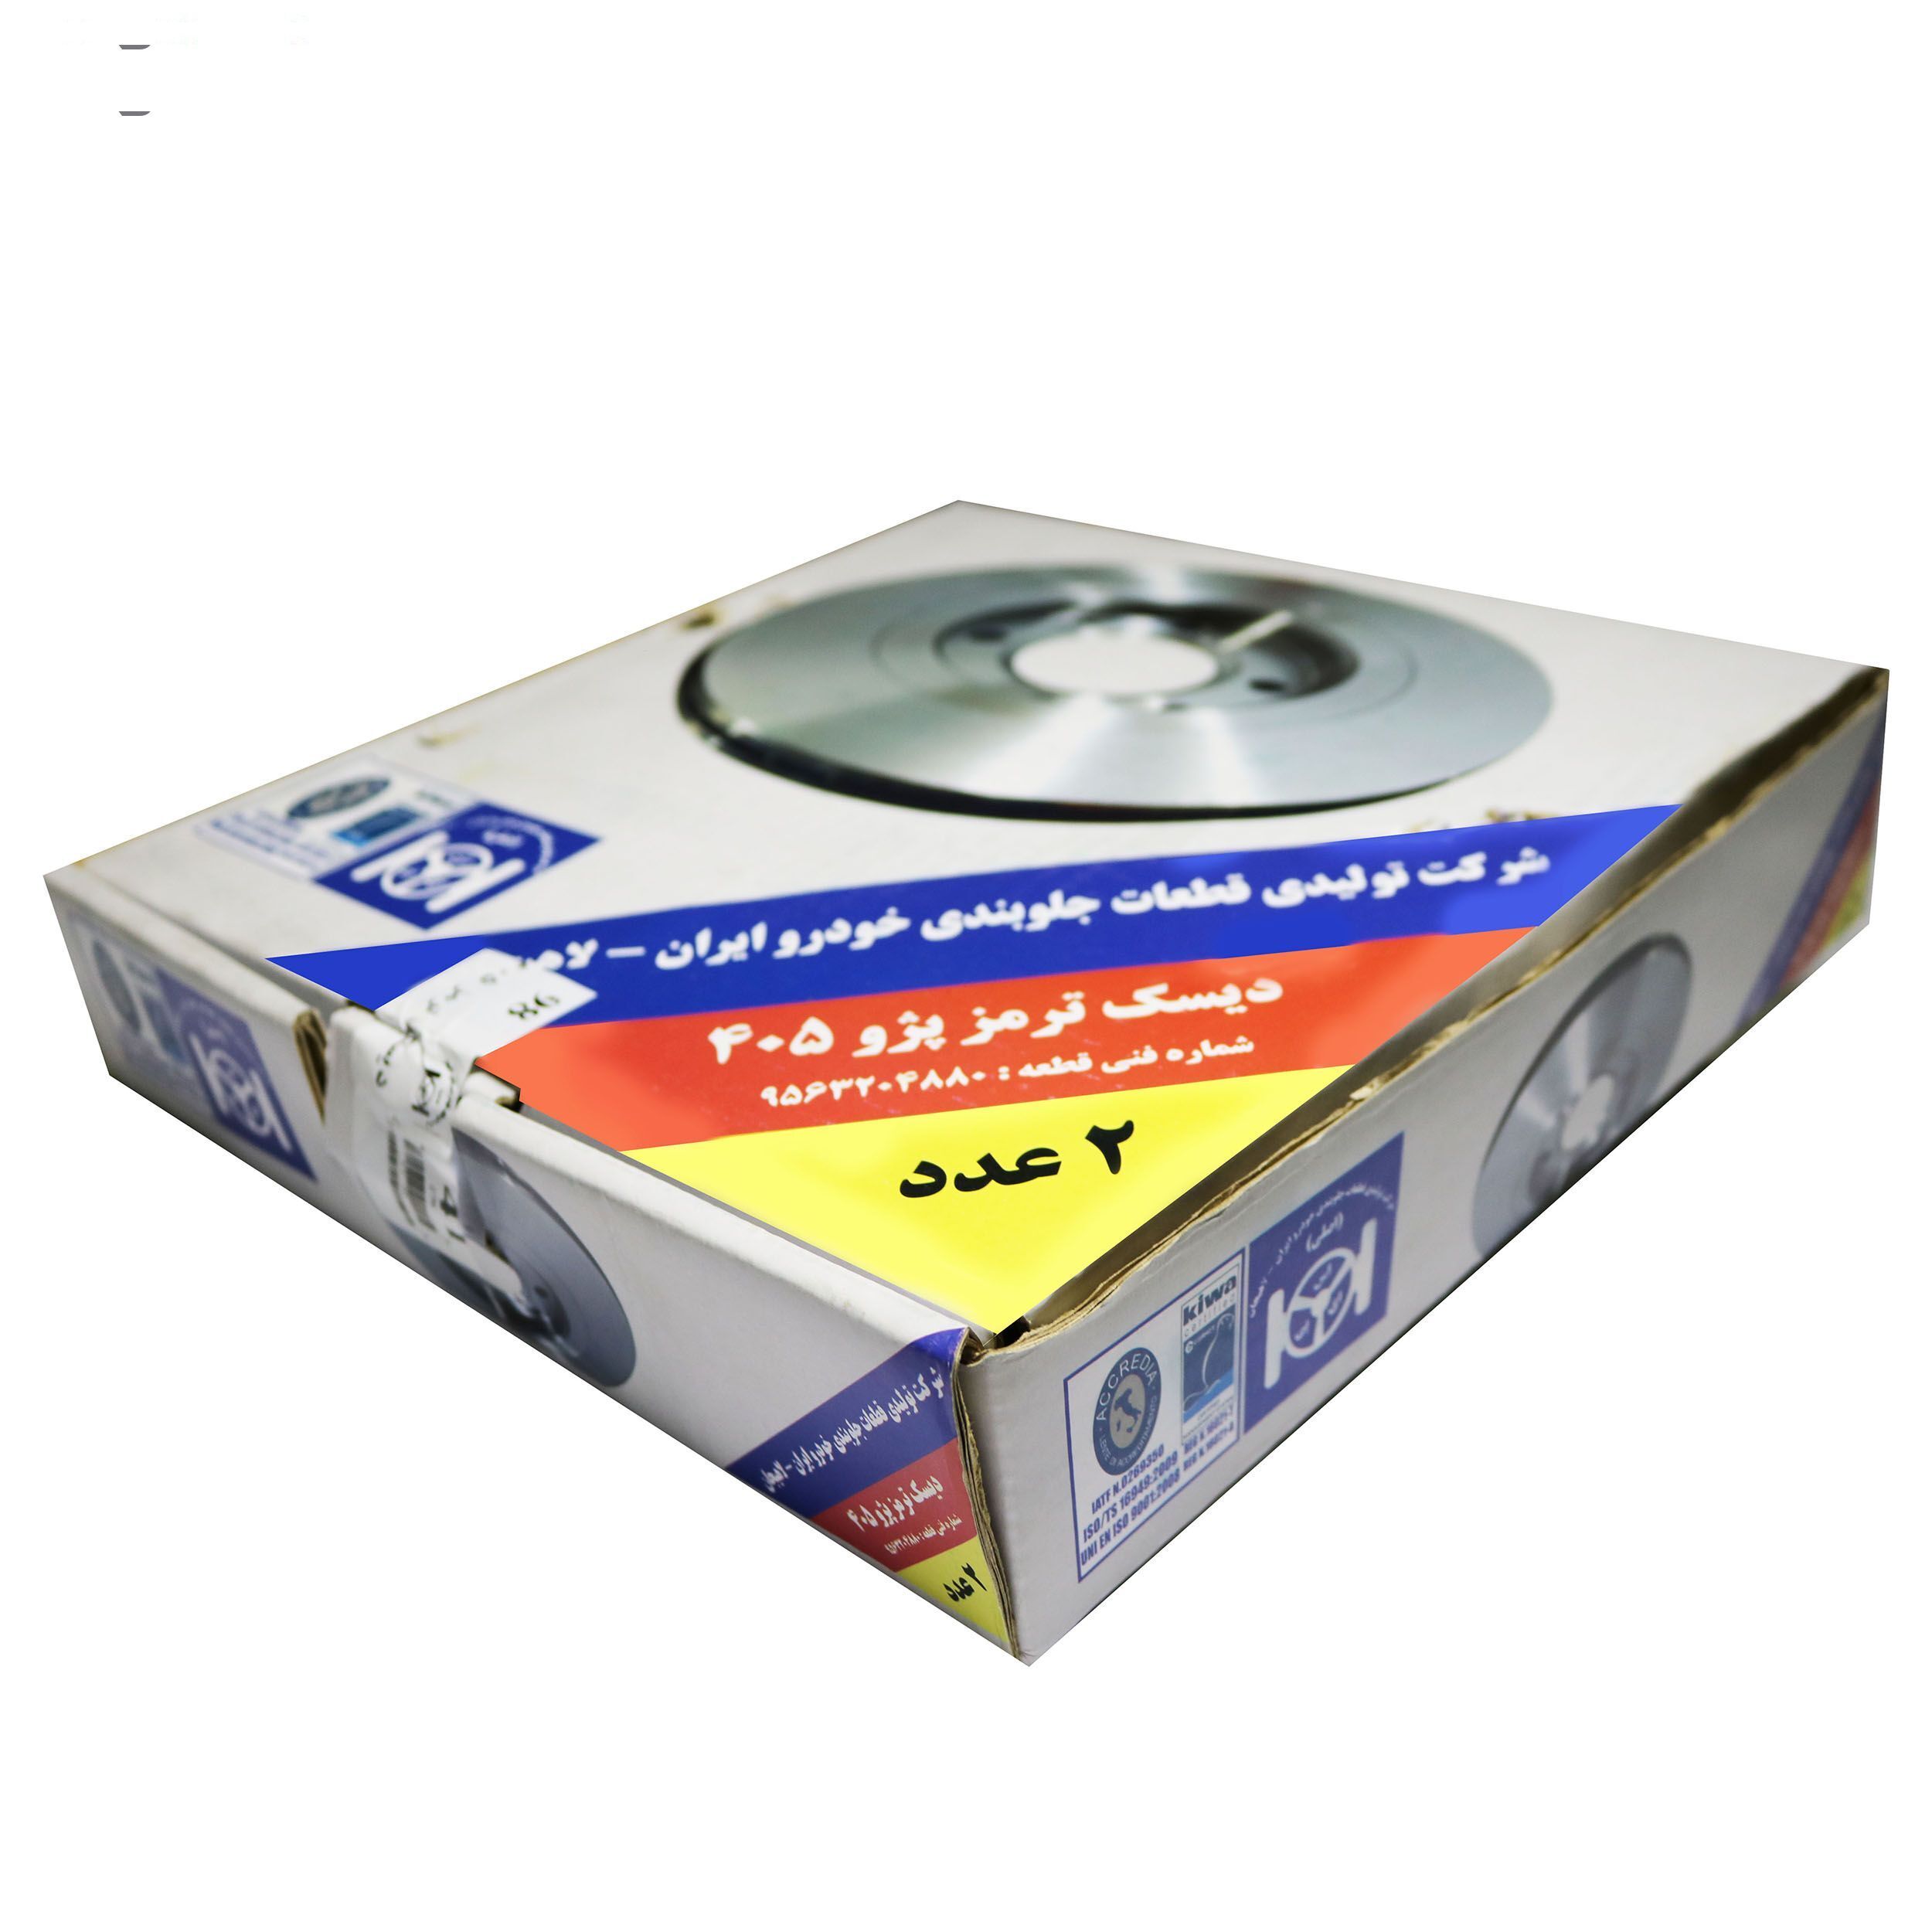 دیسک ترمز چرخ جلو شرکت تولیدی قطعات جلوبندی خودرو ایران لاهیجان کد 9563204880 بسته دو عددی